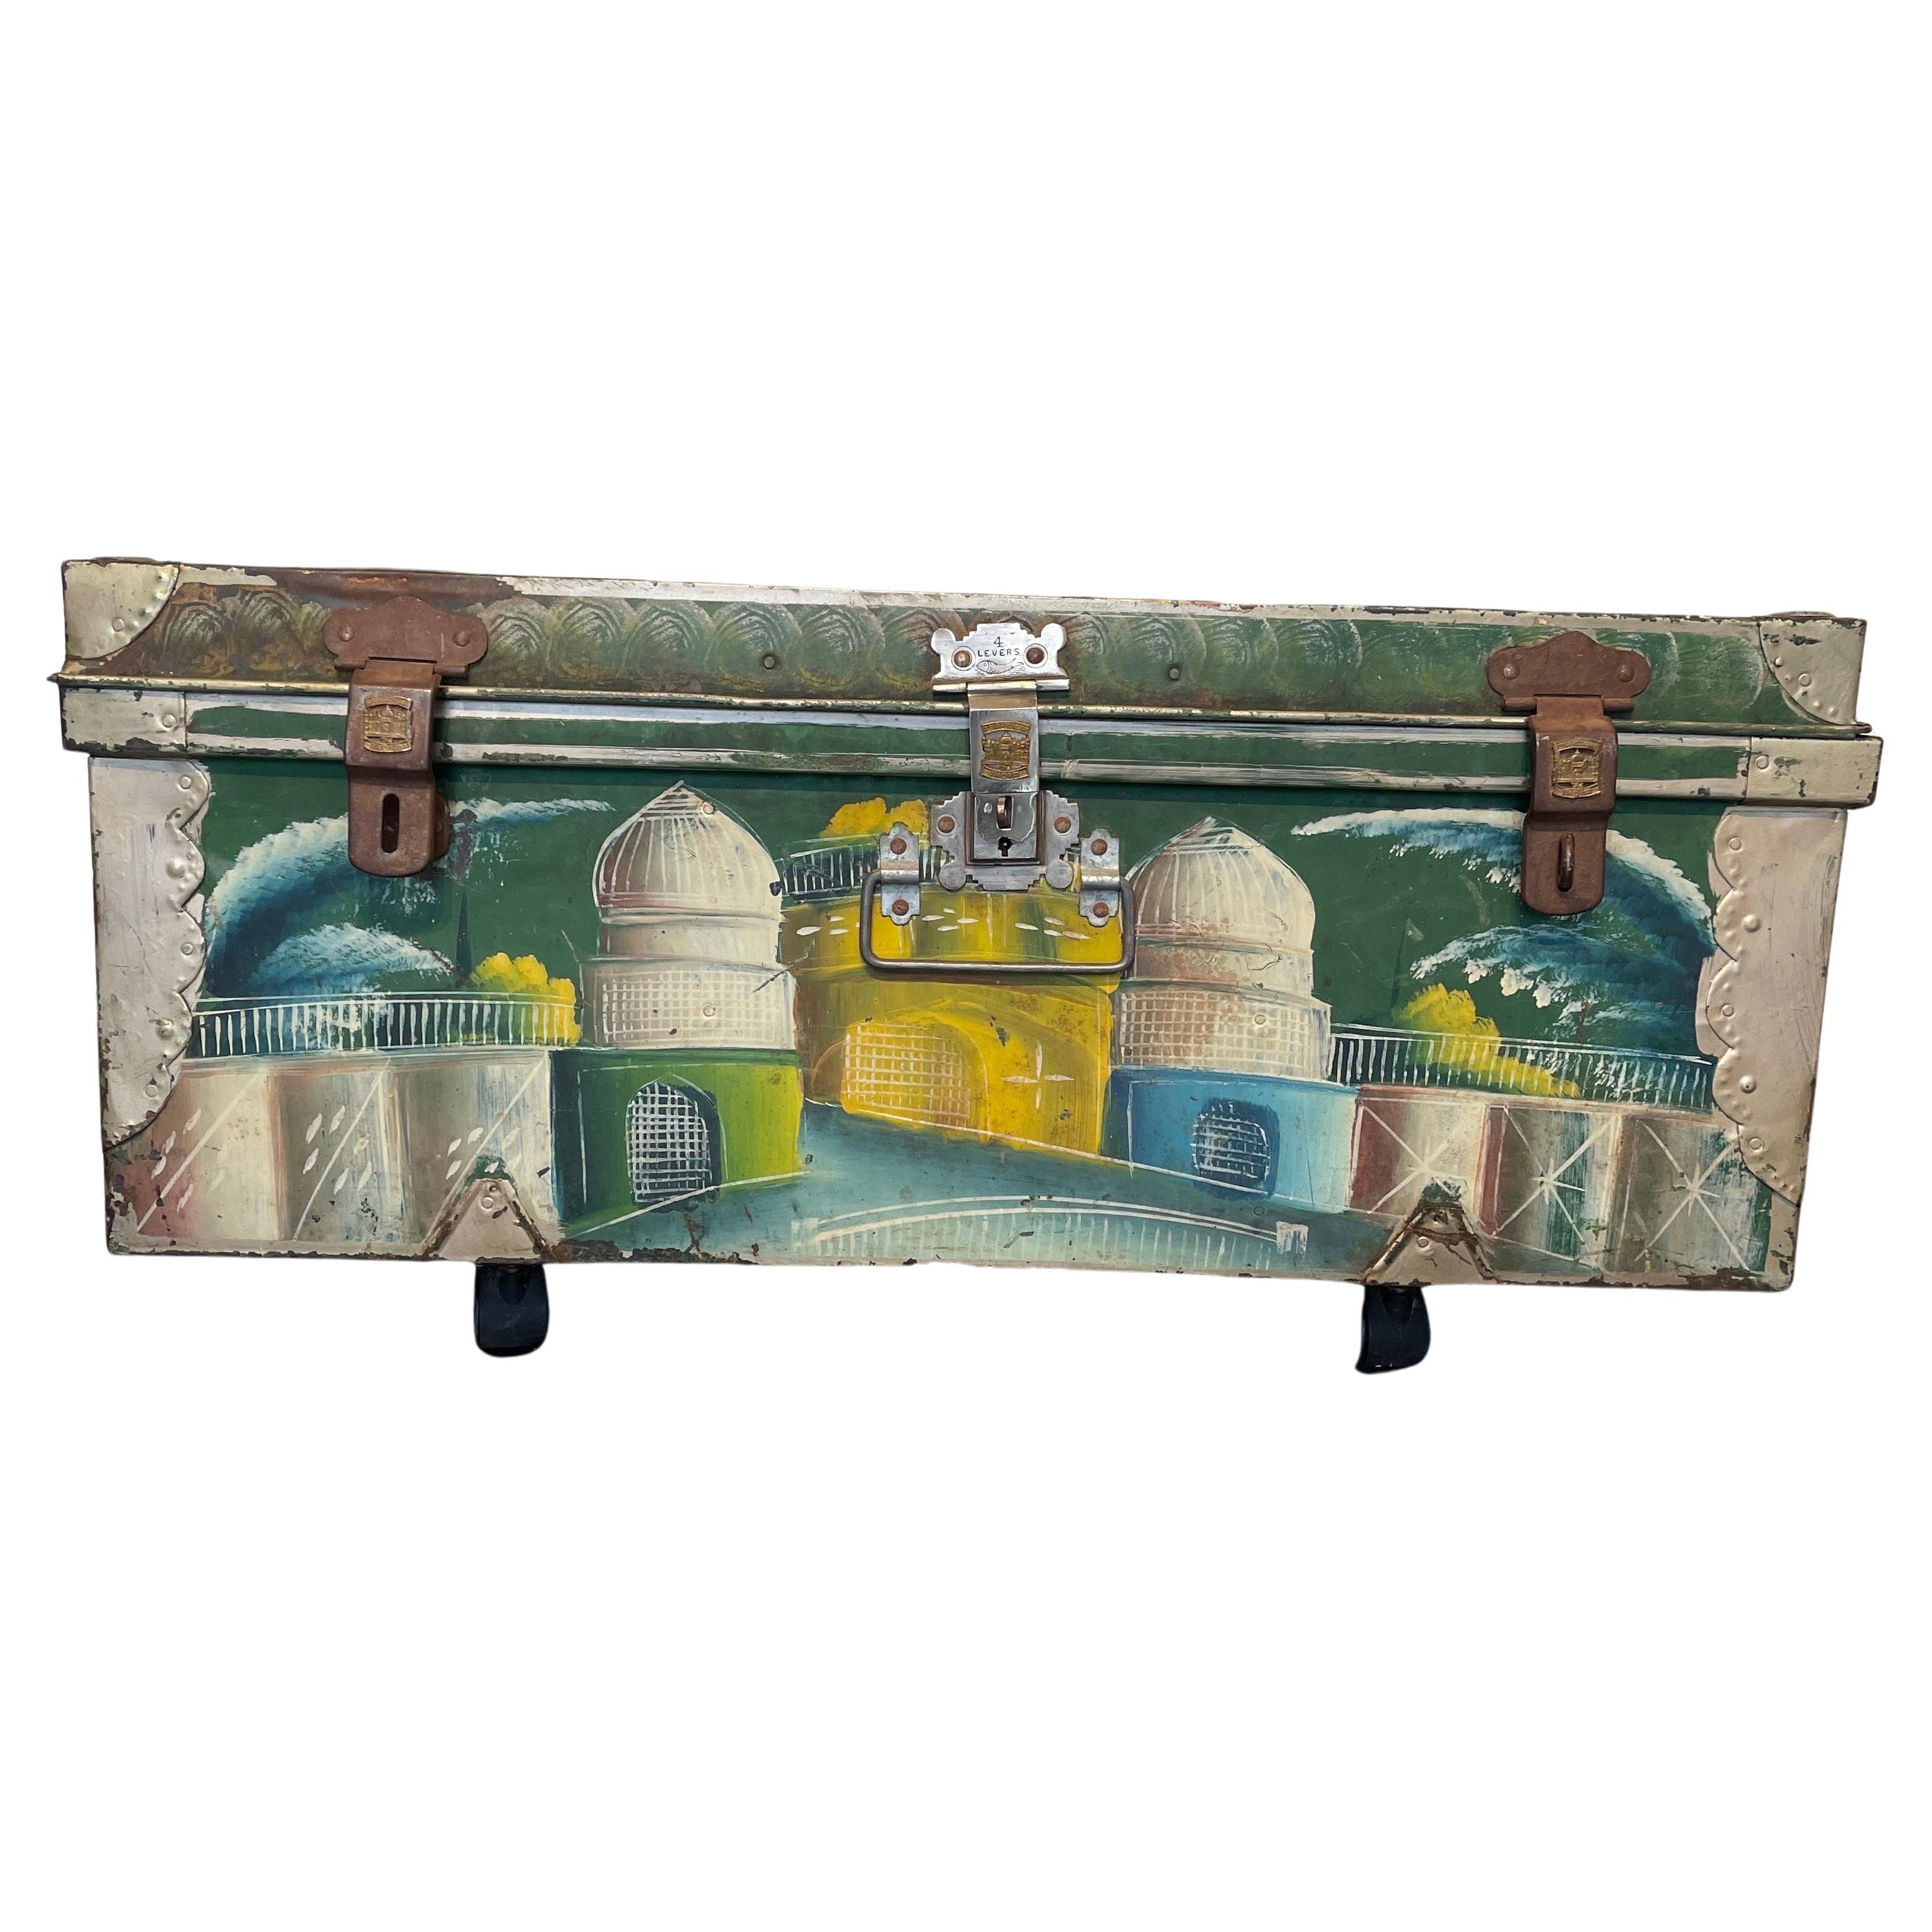 Handbemalter Koffer mit aufwendigen Szenen aus Indien, Herstellermarke Khwaja, Bombay, Indien. Diese auffällige Truhe ist eine schöne Ergänzung zu jeder Einrichtung in Ihrem Haus. Die farbenfrohen Landschaftsszenen sind vor einem markanten grünen